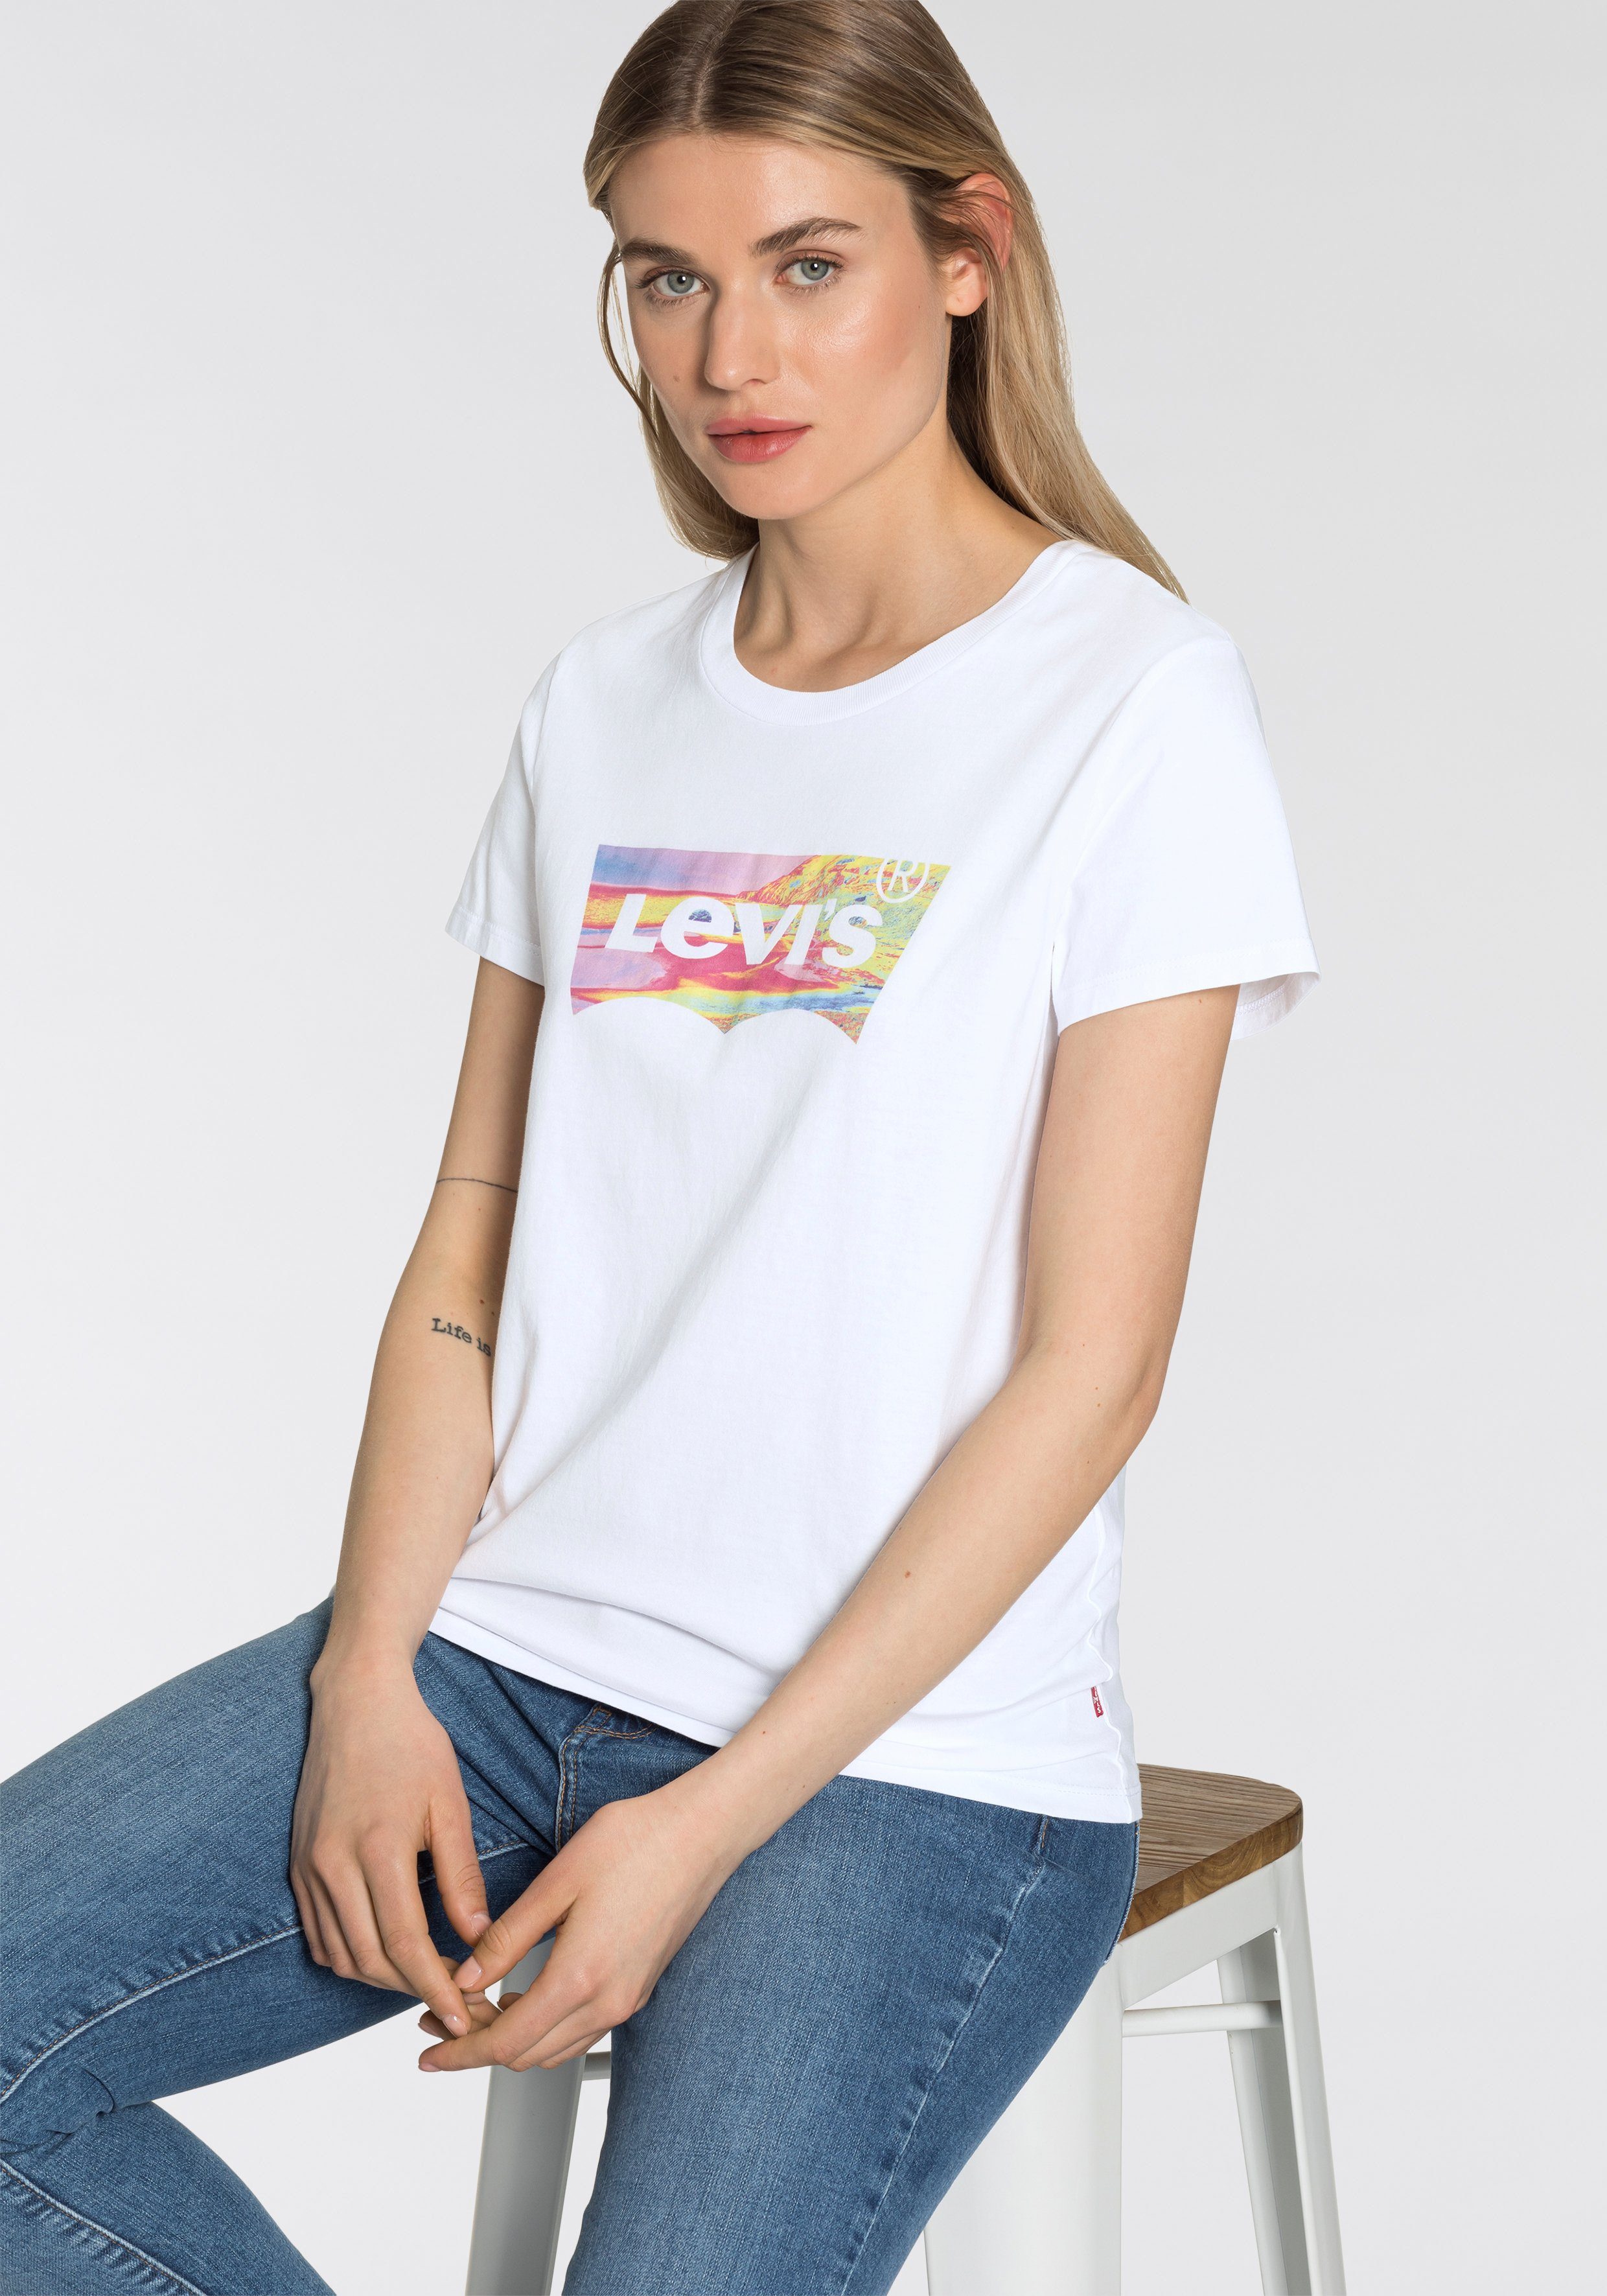 Levi's T-Shirt online kaufen | OTTO